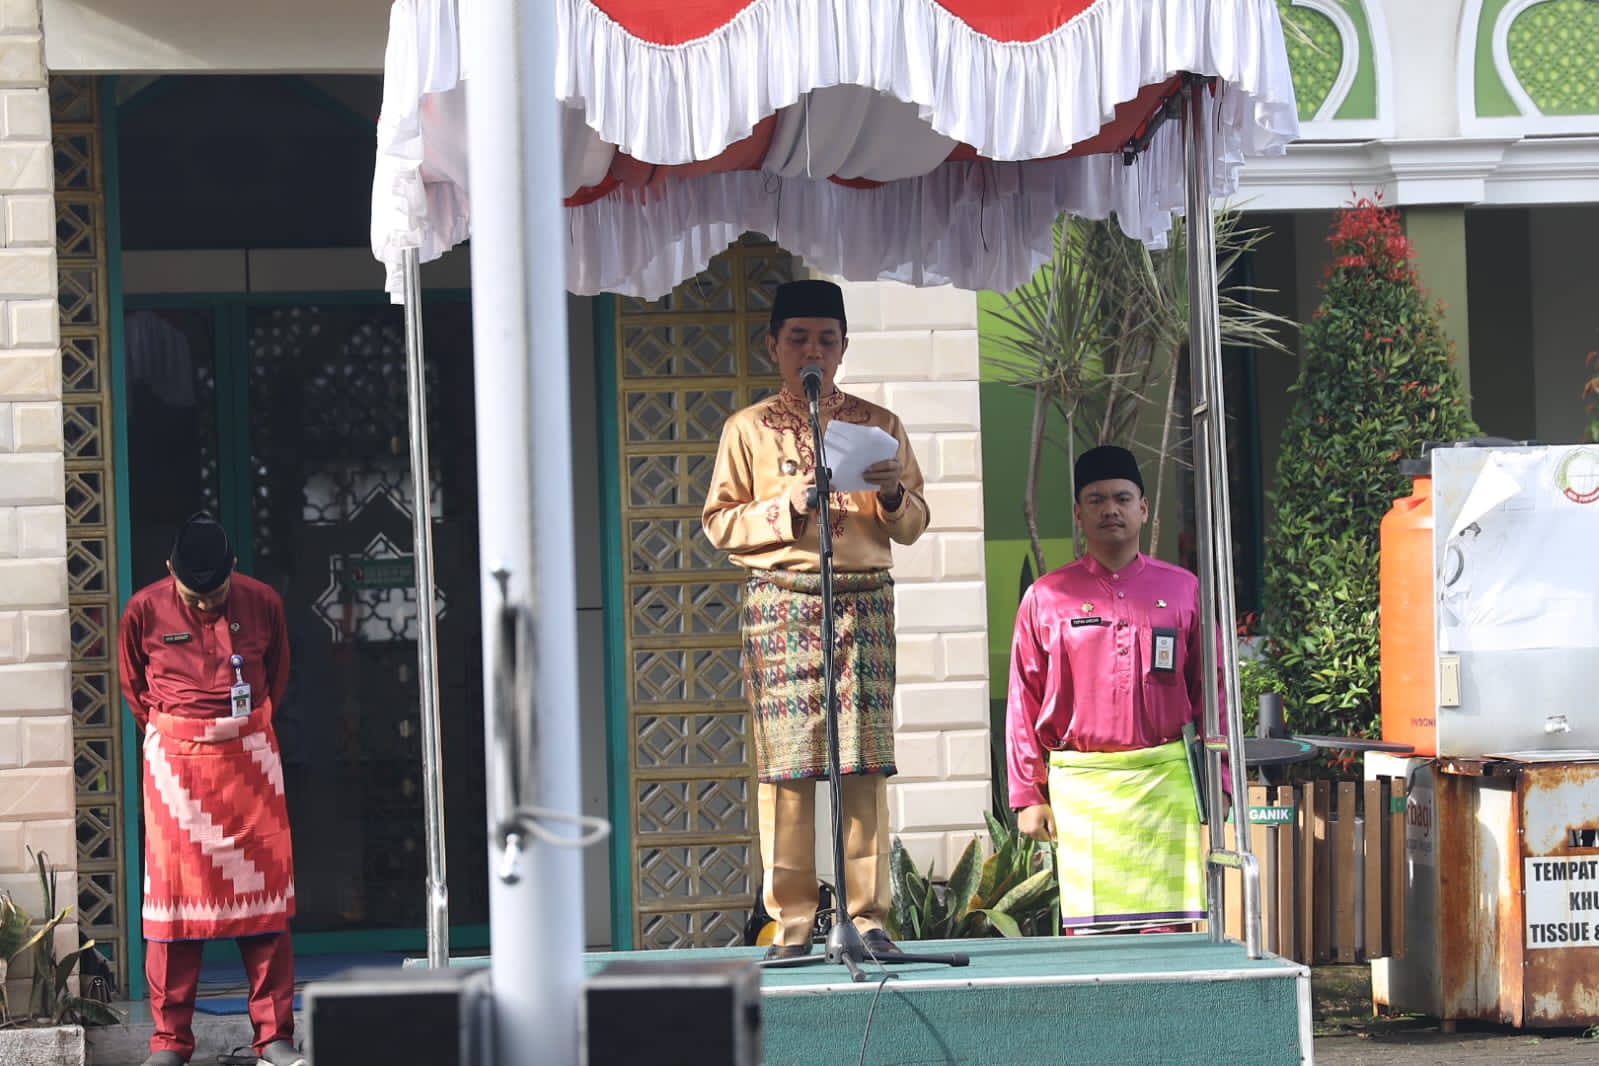 Wakil Wali Kota Pontianak, Bahasan menjadi inspektur upacara pada peringatan HUT ke-66 Pemprov Kalbar di halaman Kantor Wali Kota Pontianak. (Foto: Prokopim/Kominfo For KalbarOnline.com)